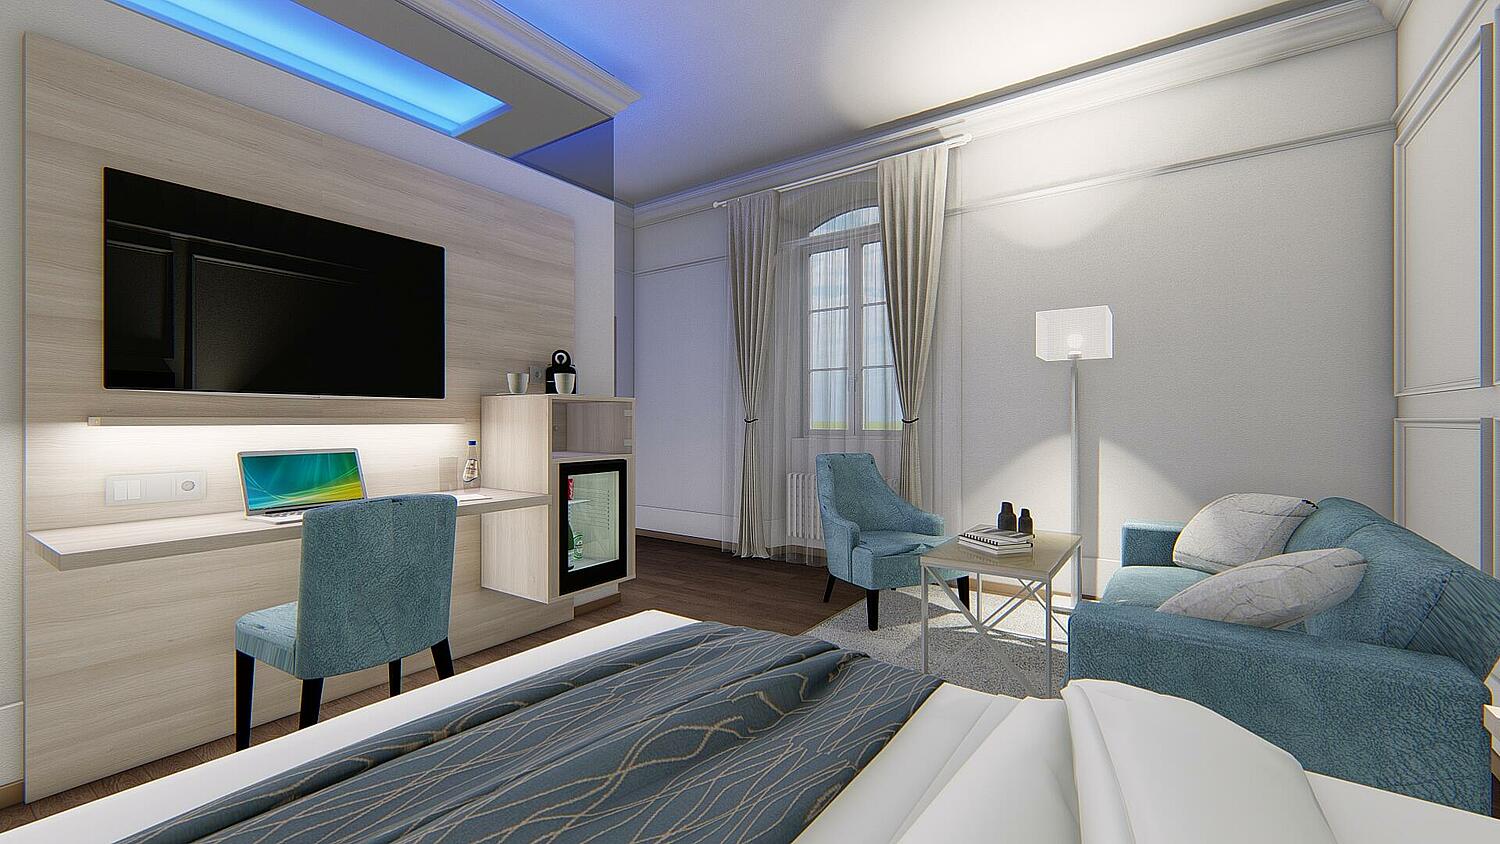 Modernes Hotelzimmer mit großen TV mitten im Zimmer